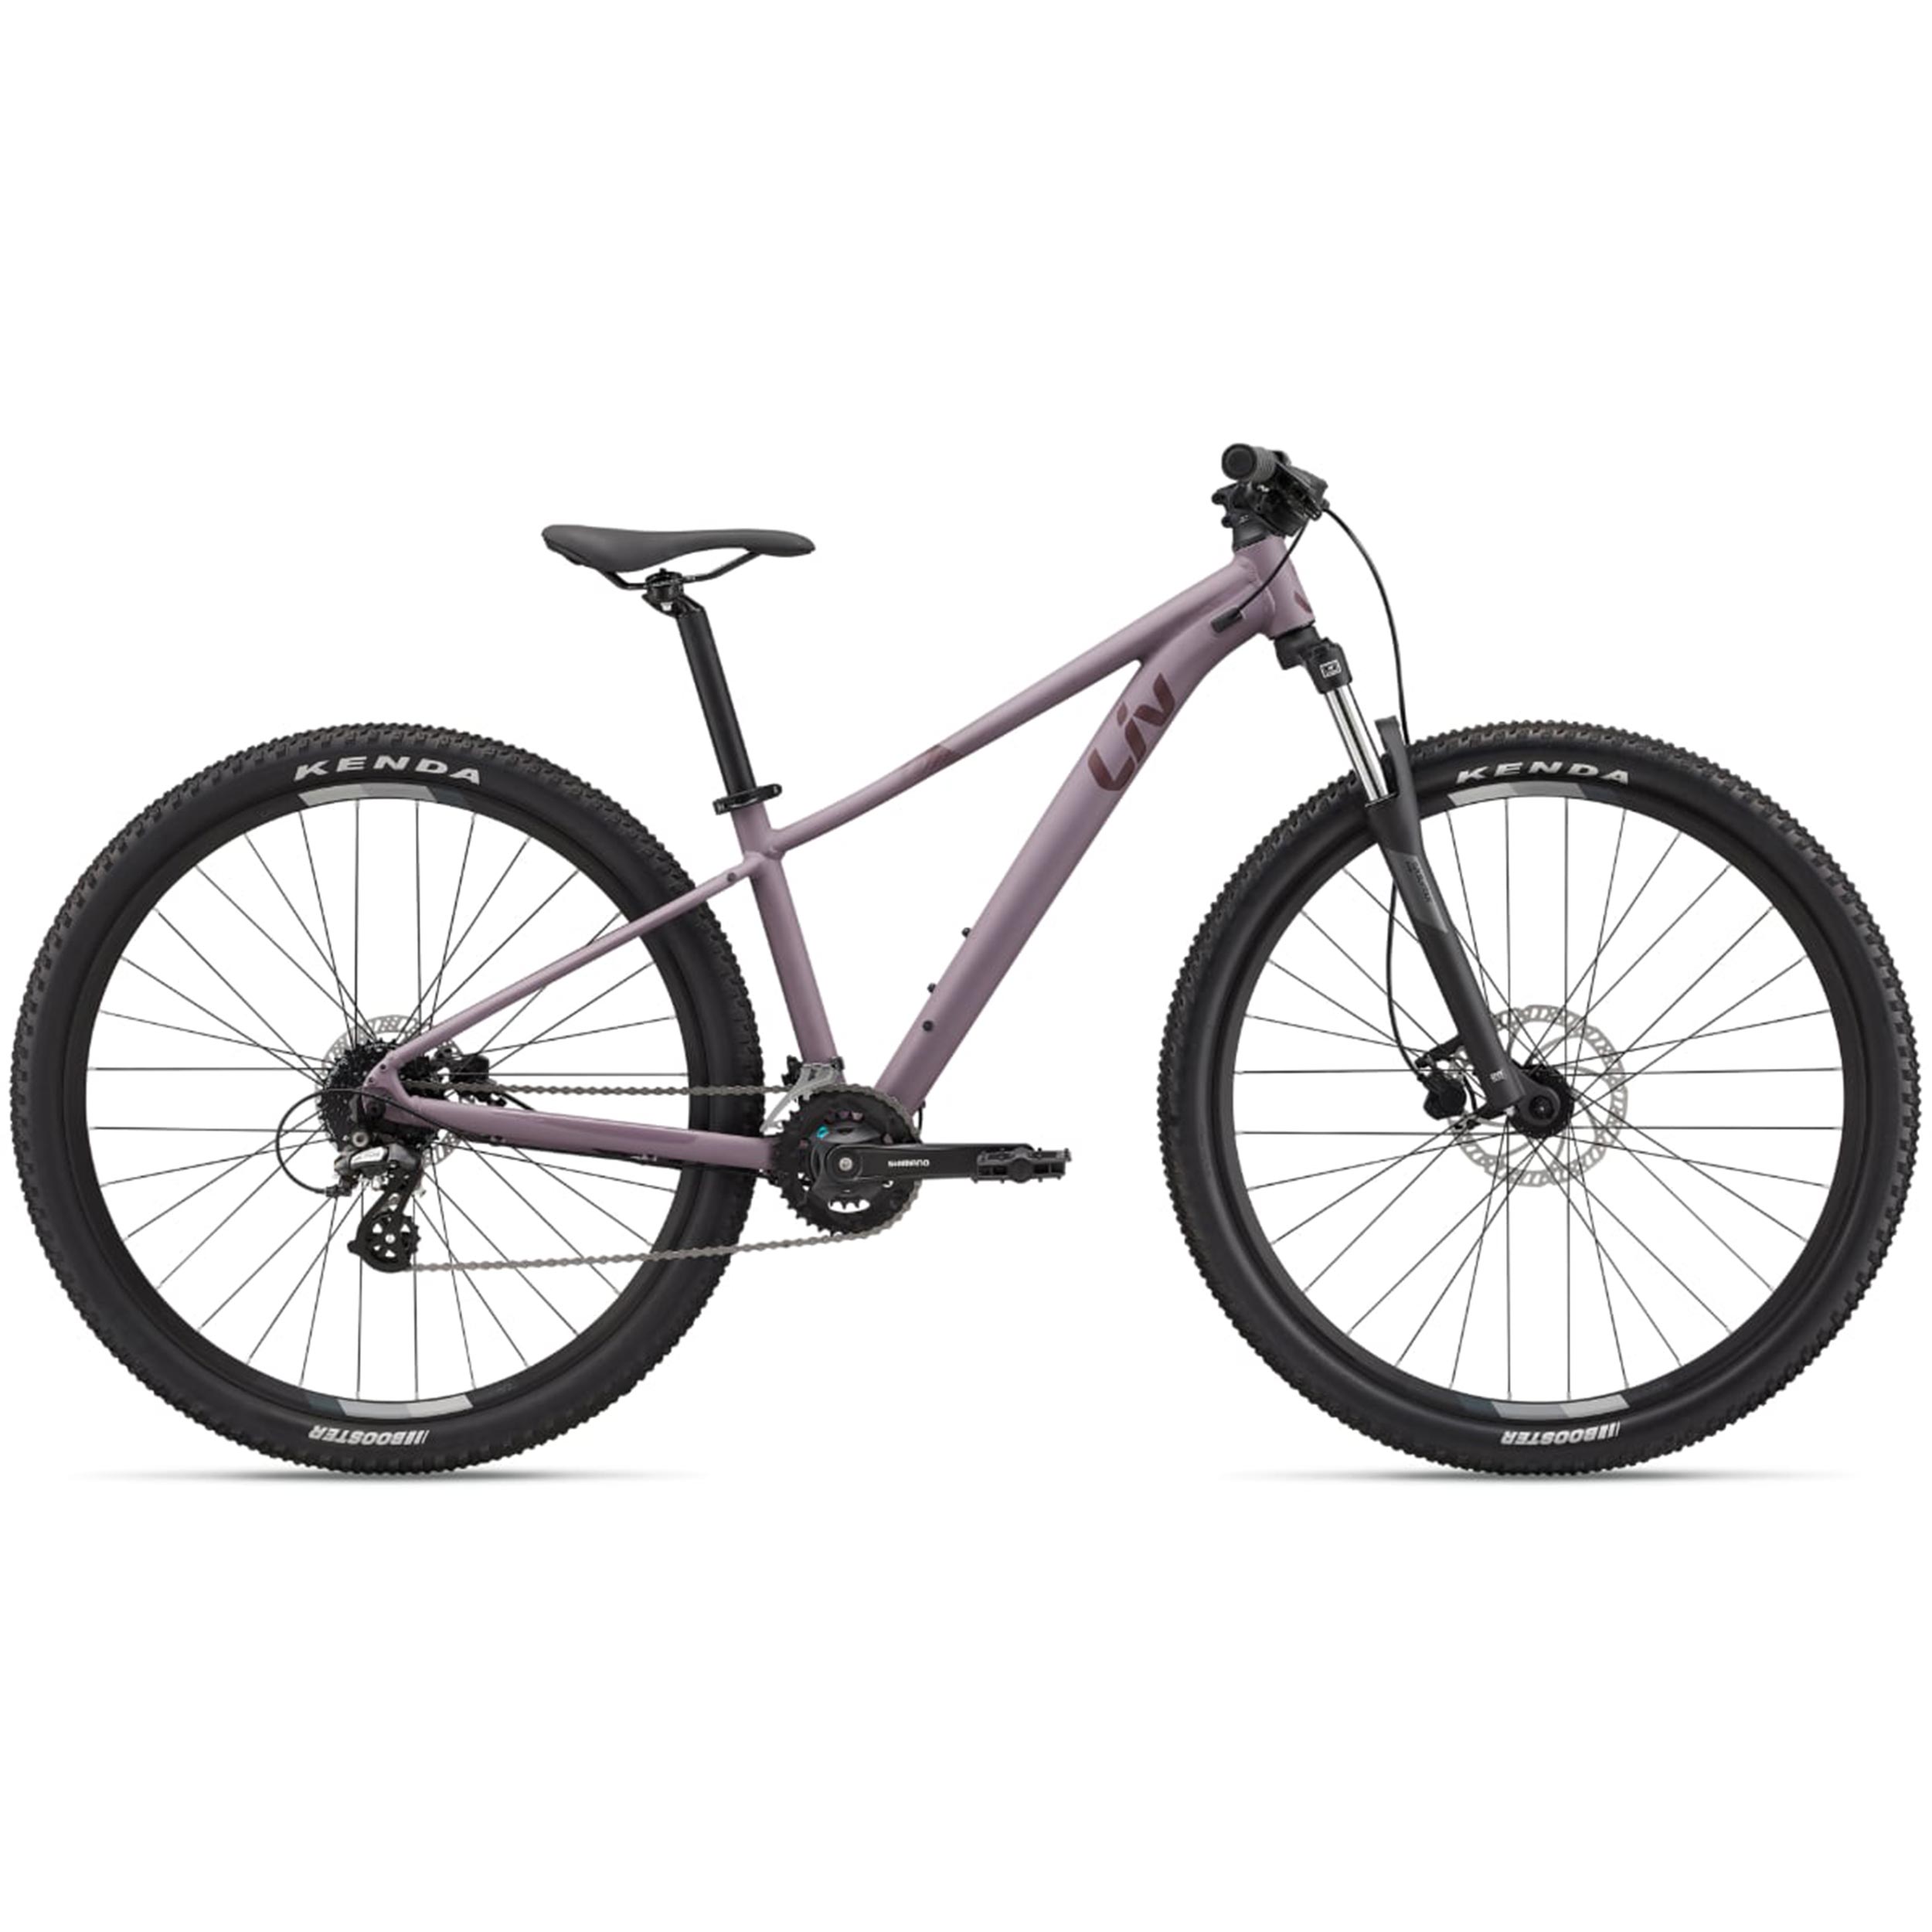 نکته خرید - قیمت روز دوچرخه کوهستان لیو مدل TEMPT 3 Purple Ash سایز 27.5 خرید